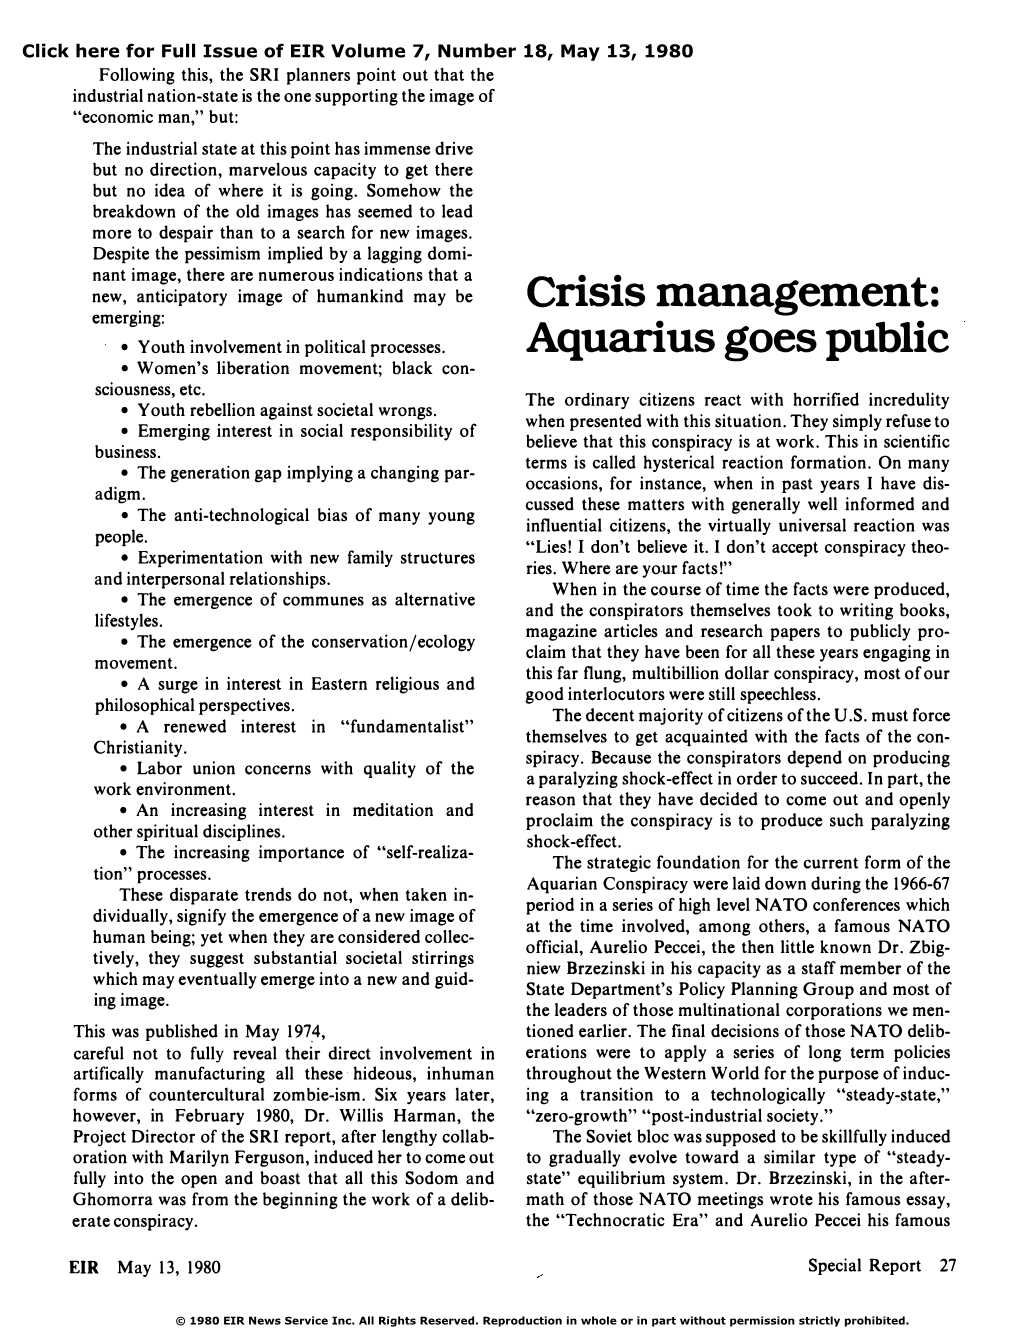 Crisis Management: Aquarius Goes Public